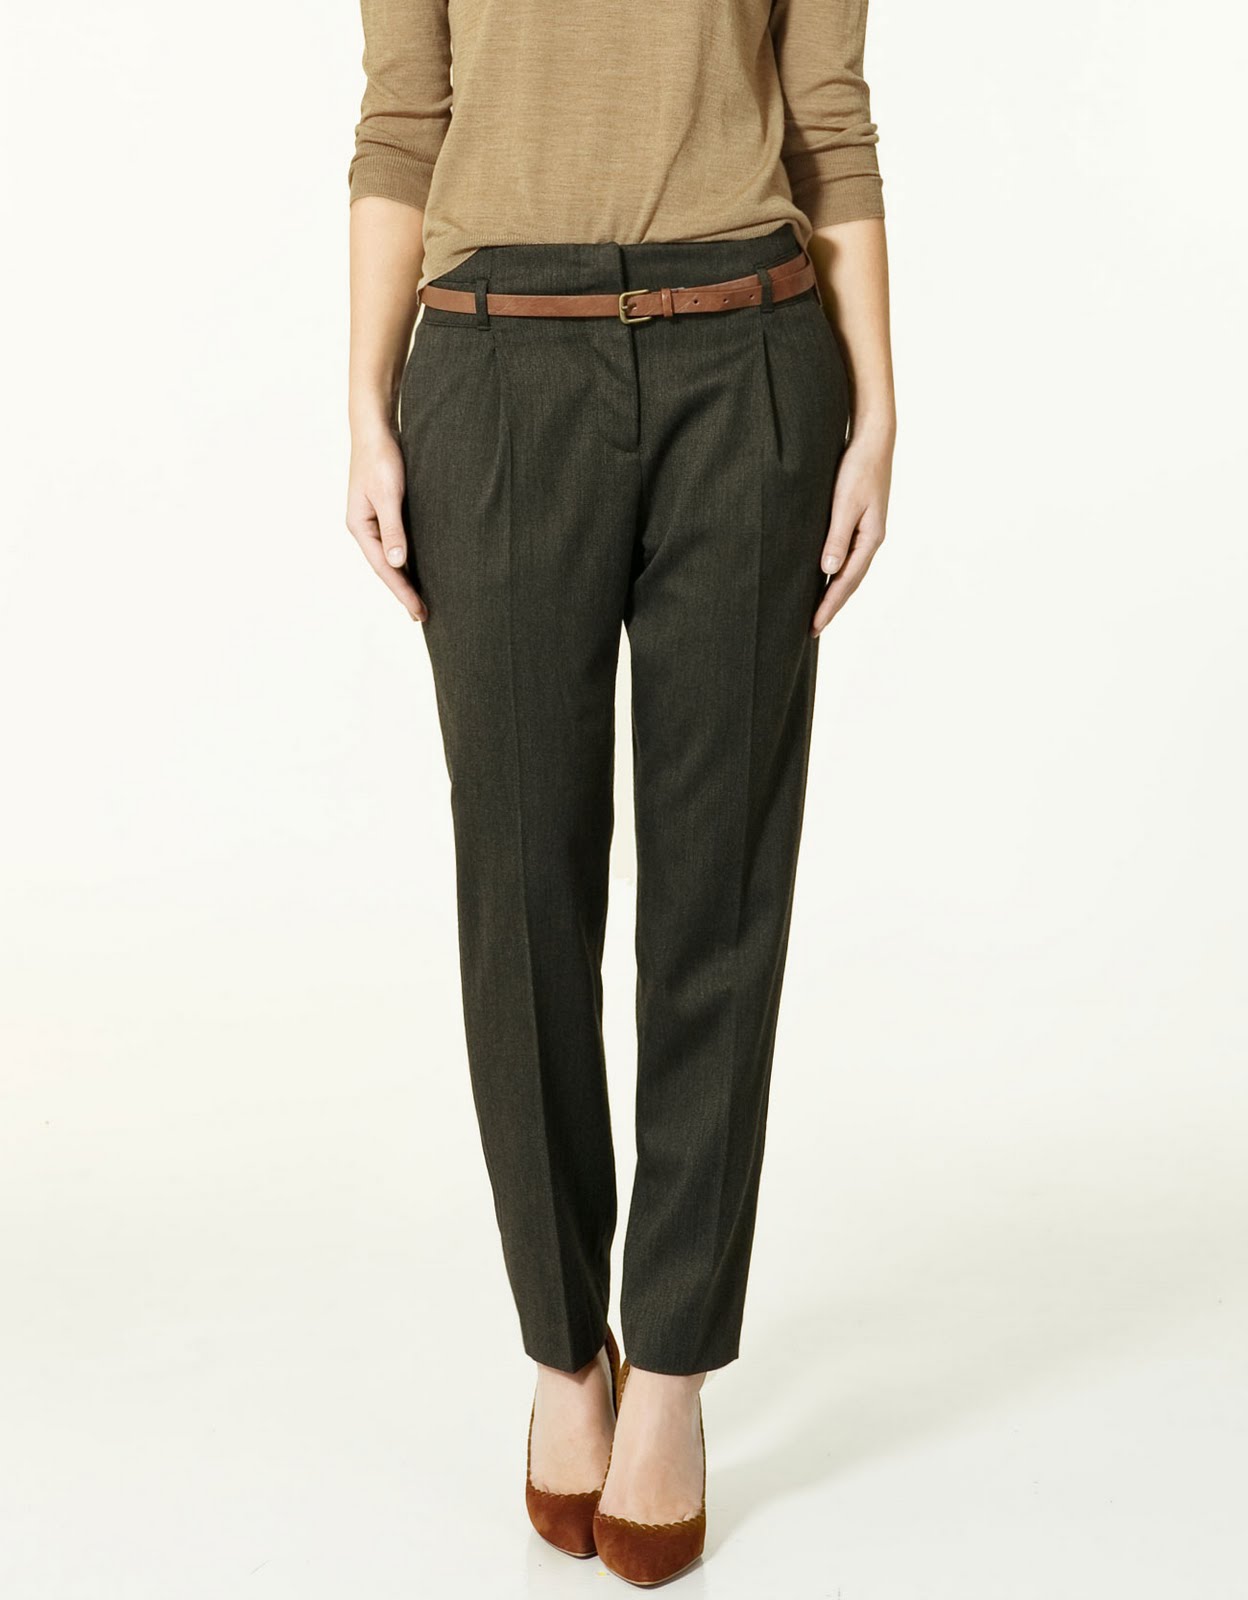 Wearable Trends: Zara Pleated Trousers